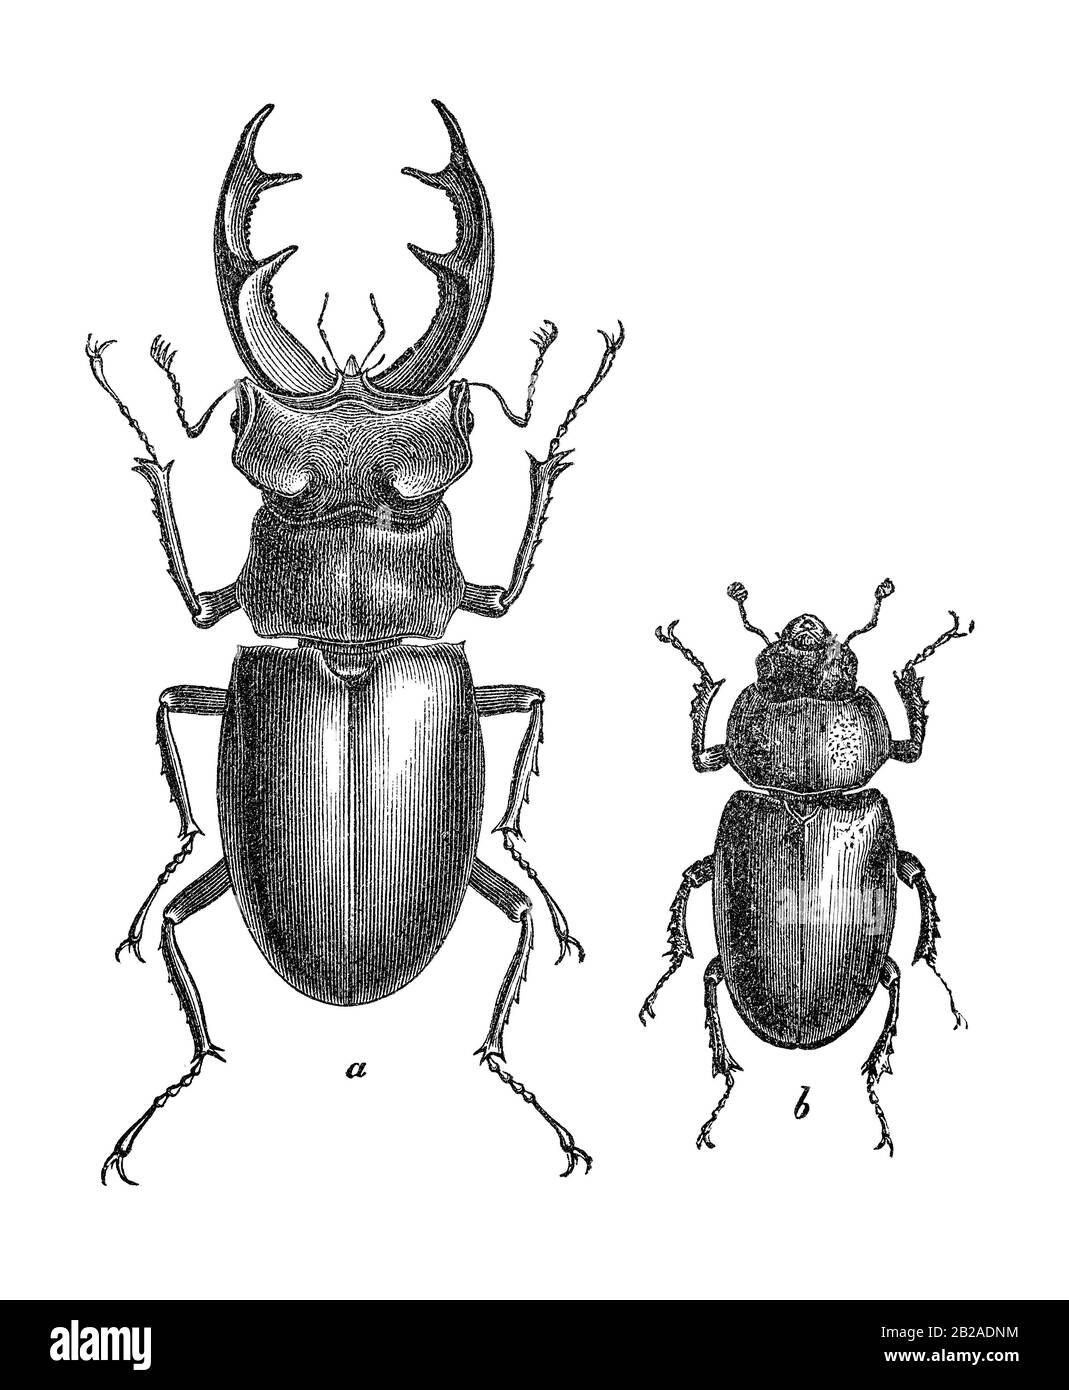 Spécimens de coléoptères (Lucanus cervus) mâles (a) et femelles (b) dans une ancienne illustration pour l'école. xixe siècle. Banque D'Images